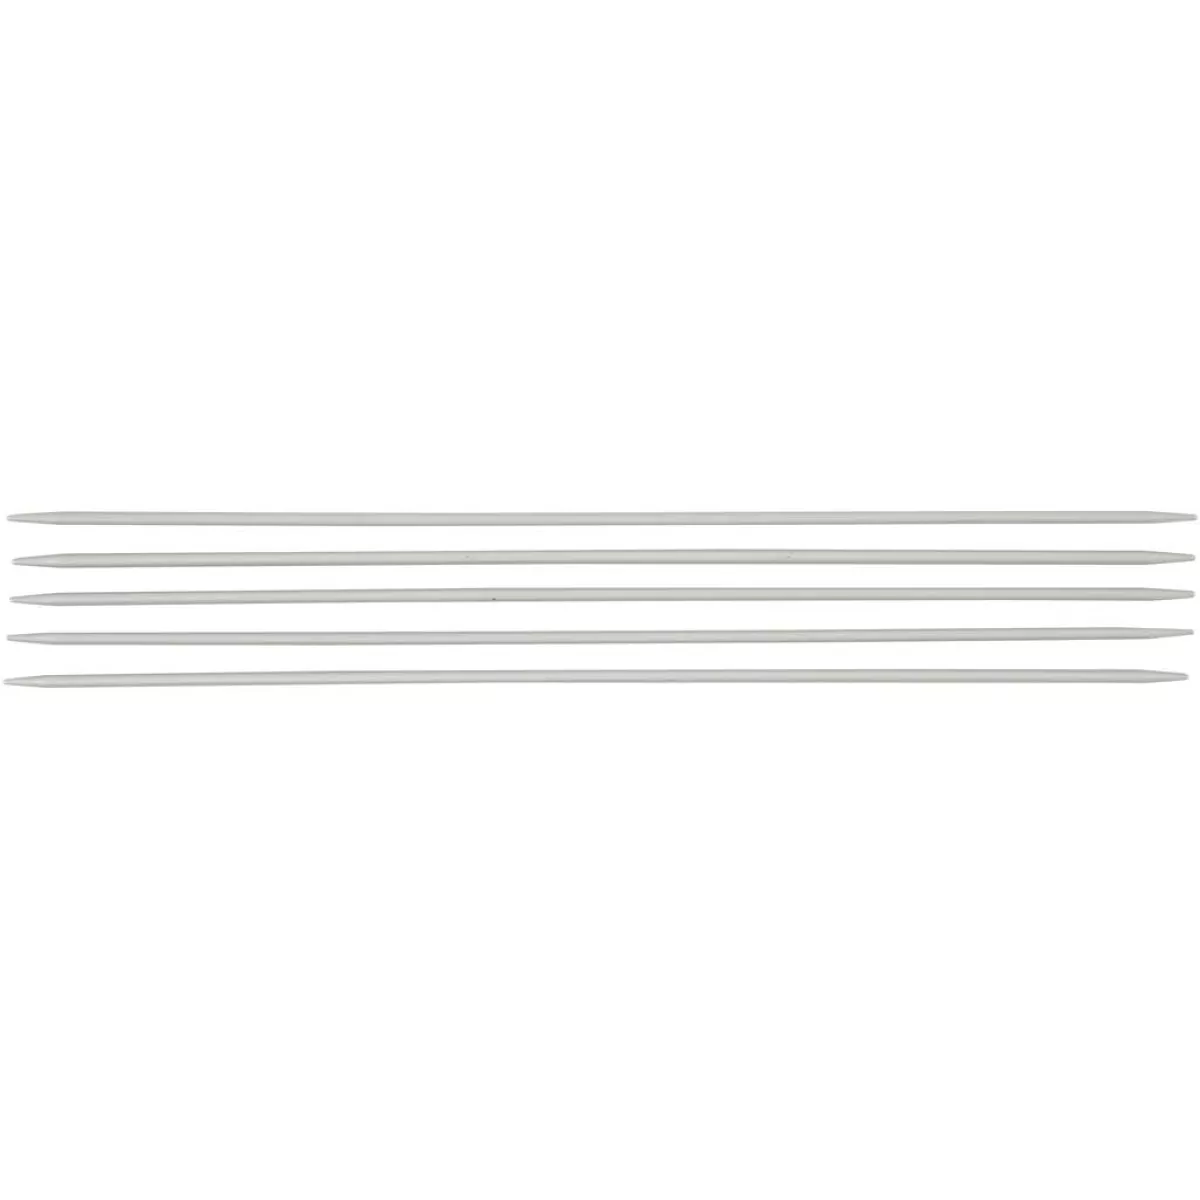 #1 - Strømpepinde, nr. 2,5, L: 20 cm, 1 sæt